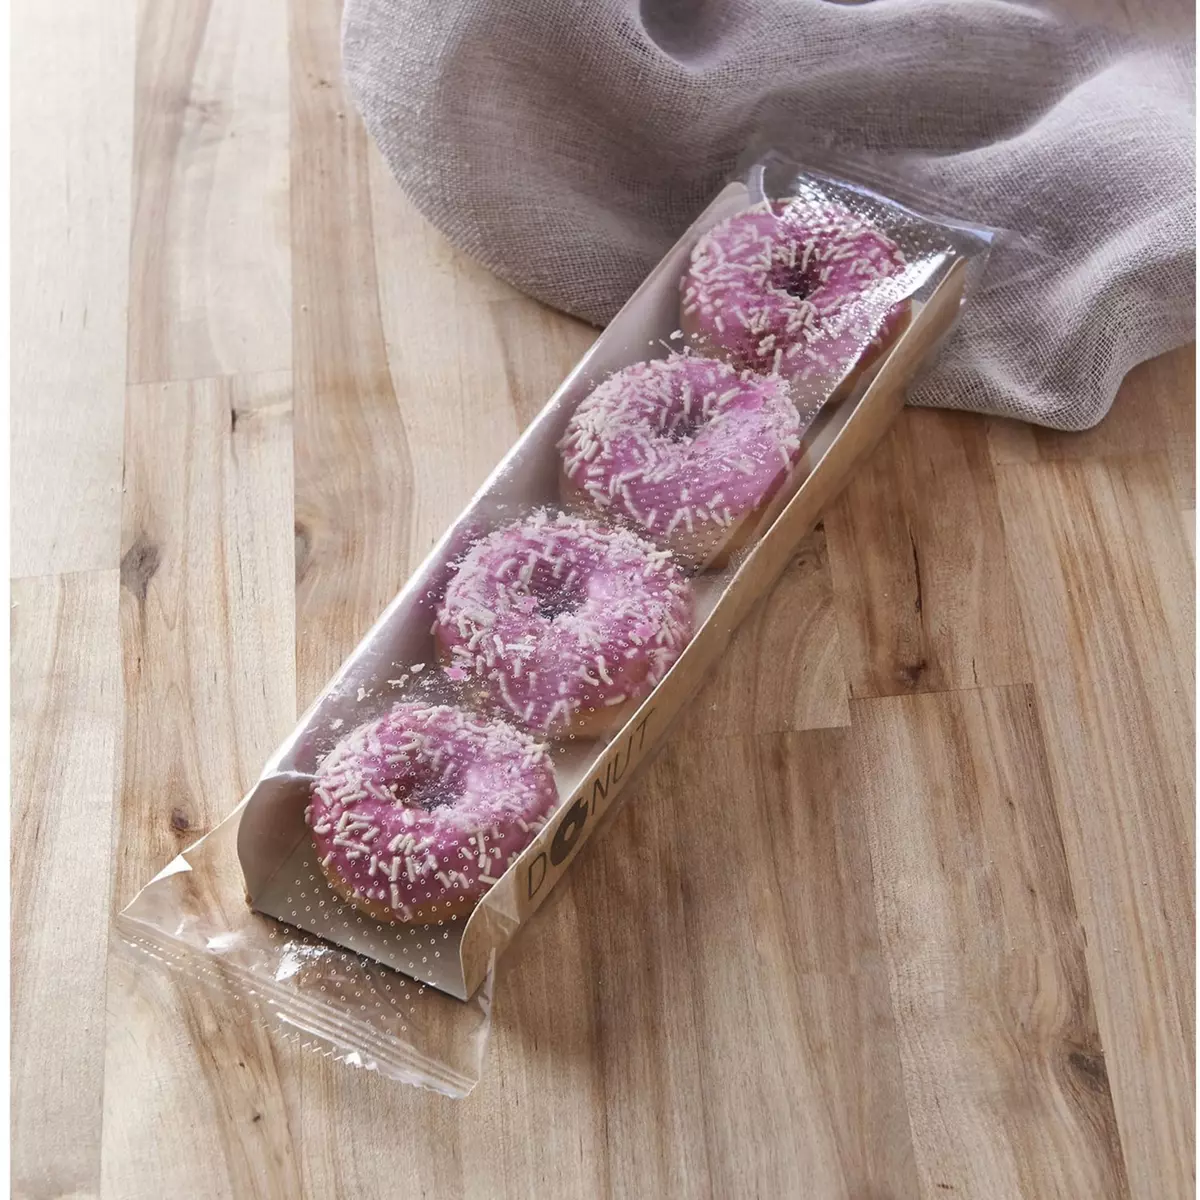 MON PÂTISSIER Mini donuts avec glaçage rose et décor vermicelles en sucre 4 donuts 72g